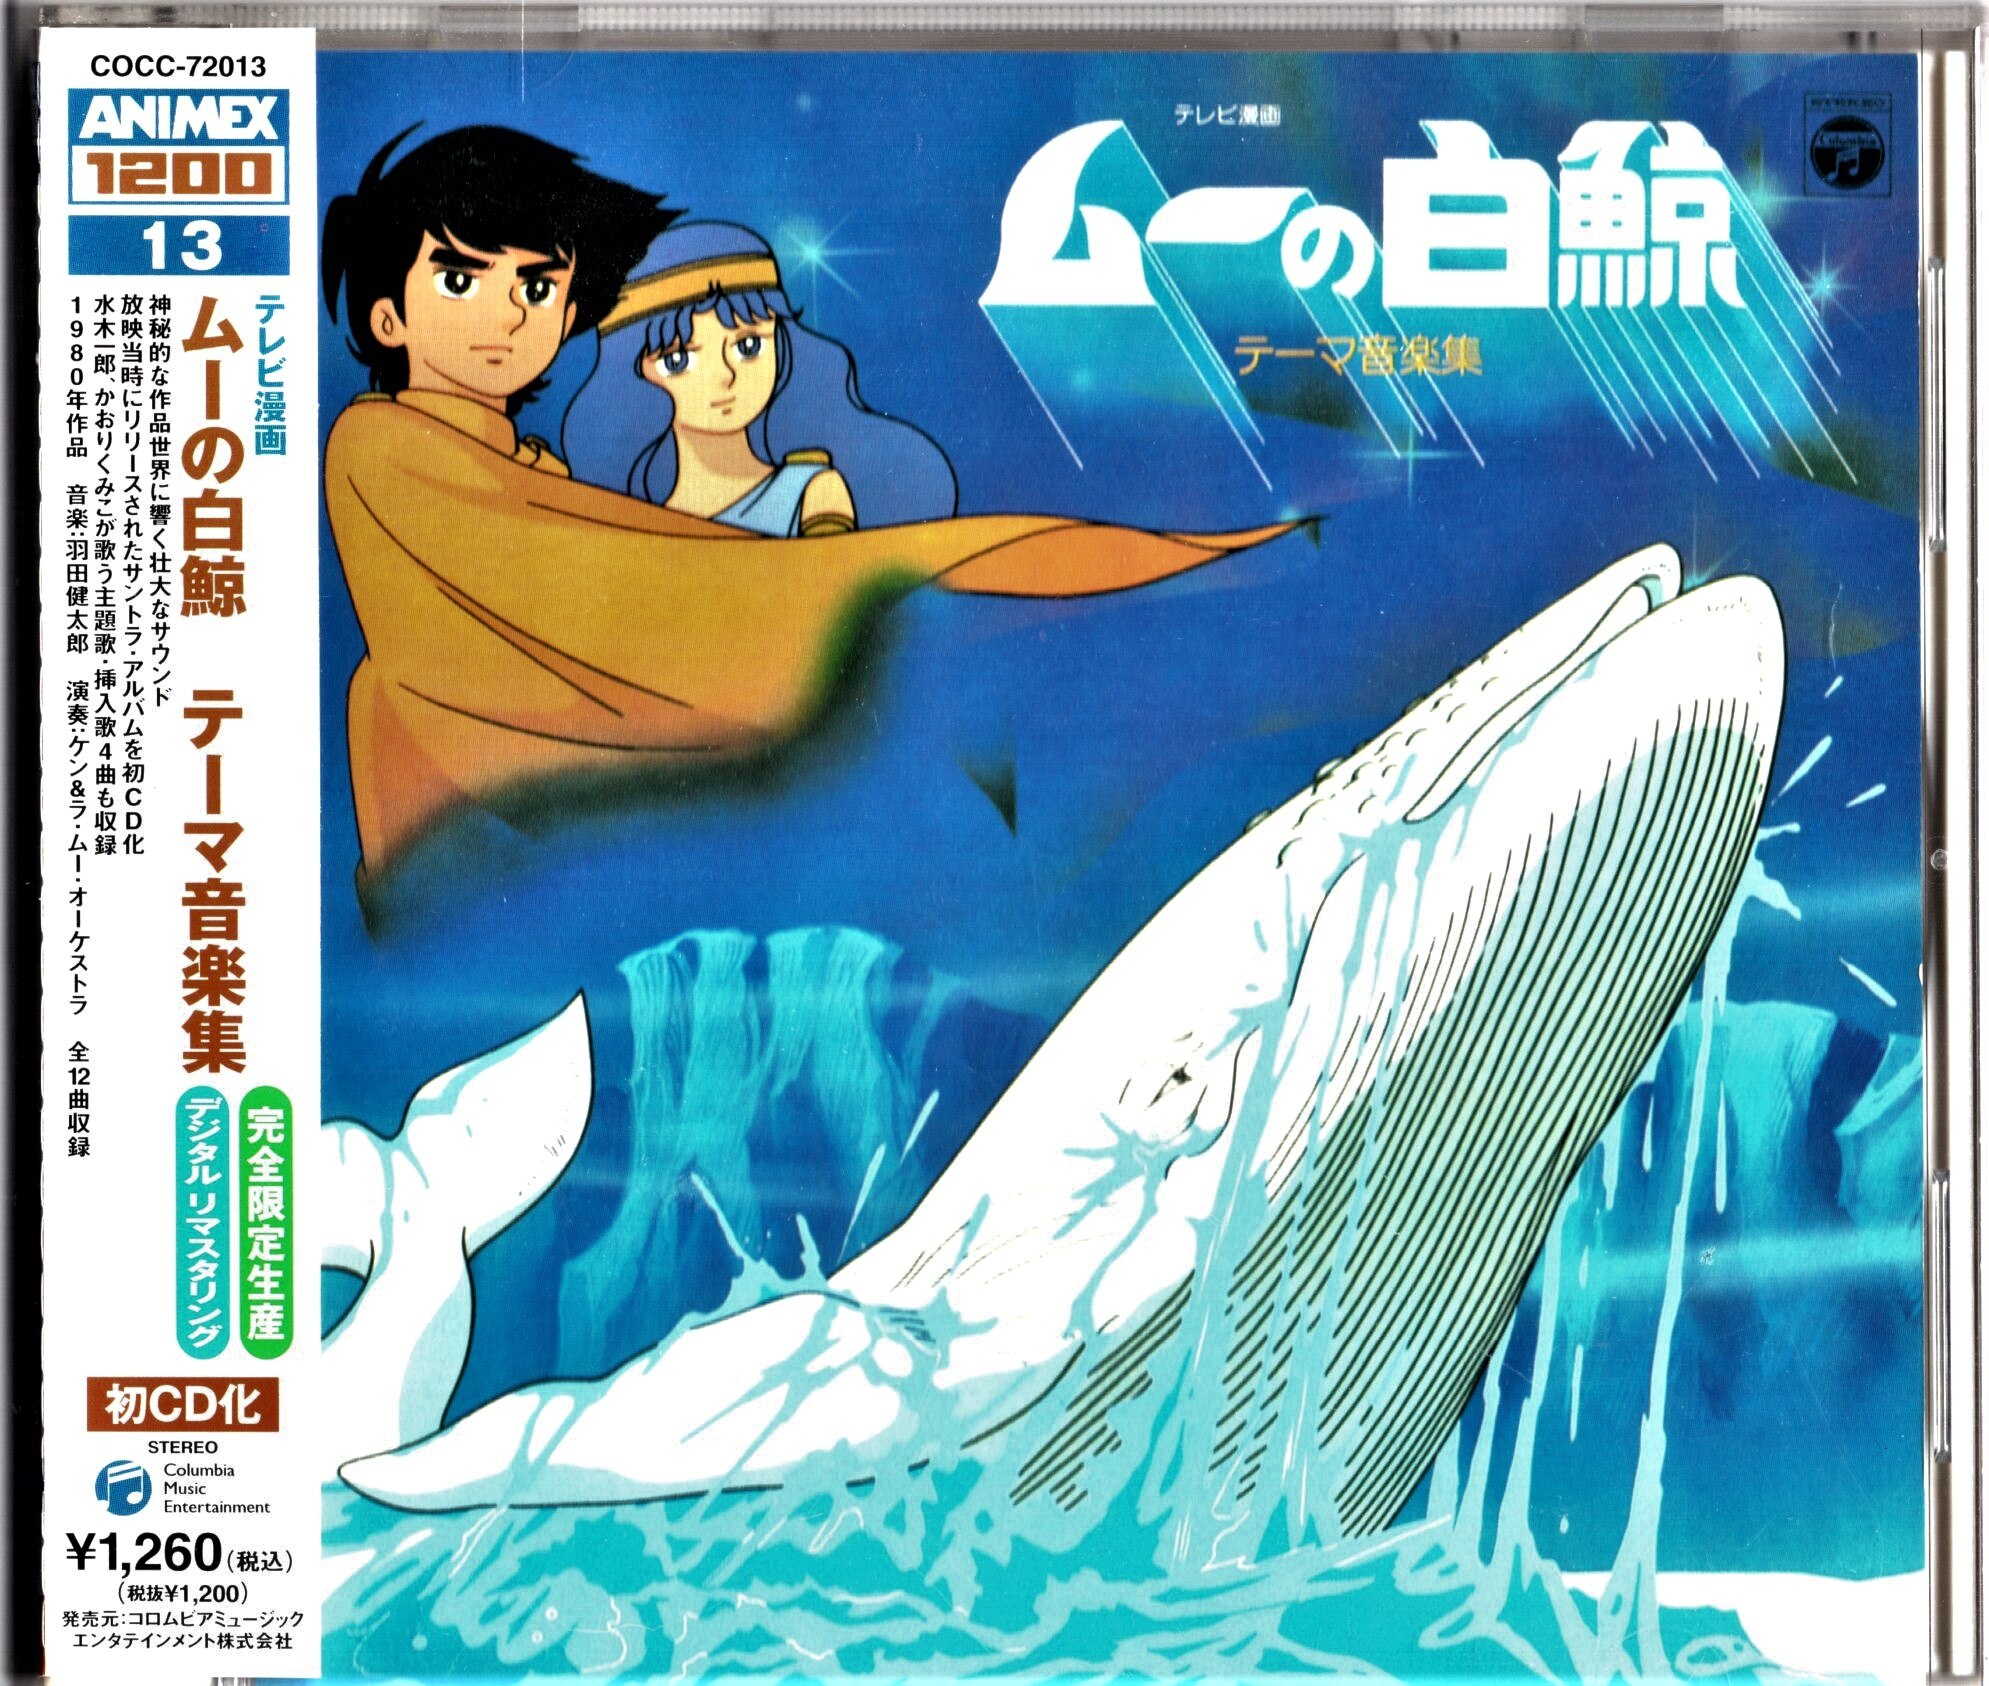 東京銀座販売 希少盤『ムーの白鯨』(1980) Blu-ray 2枚組 全26話収録 